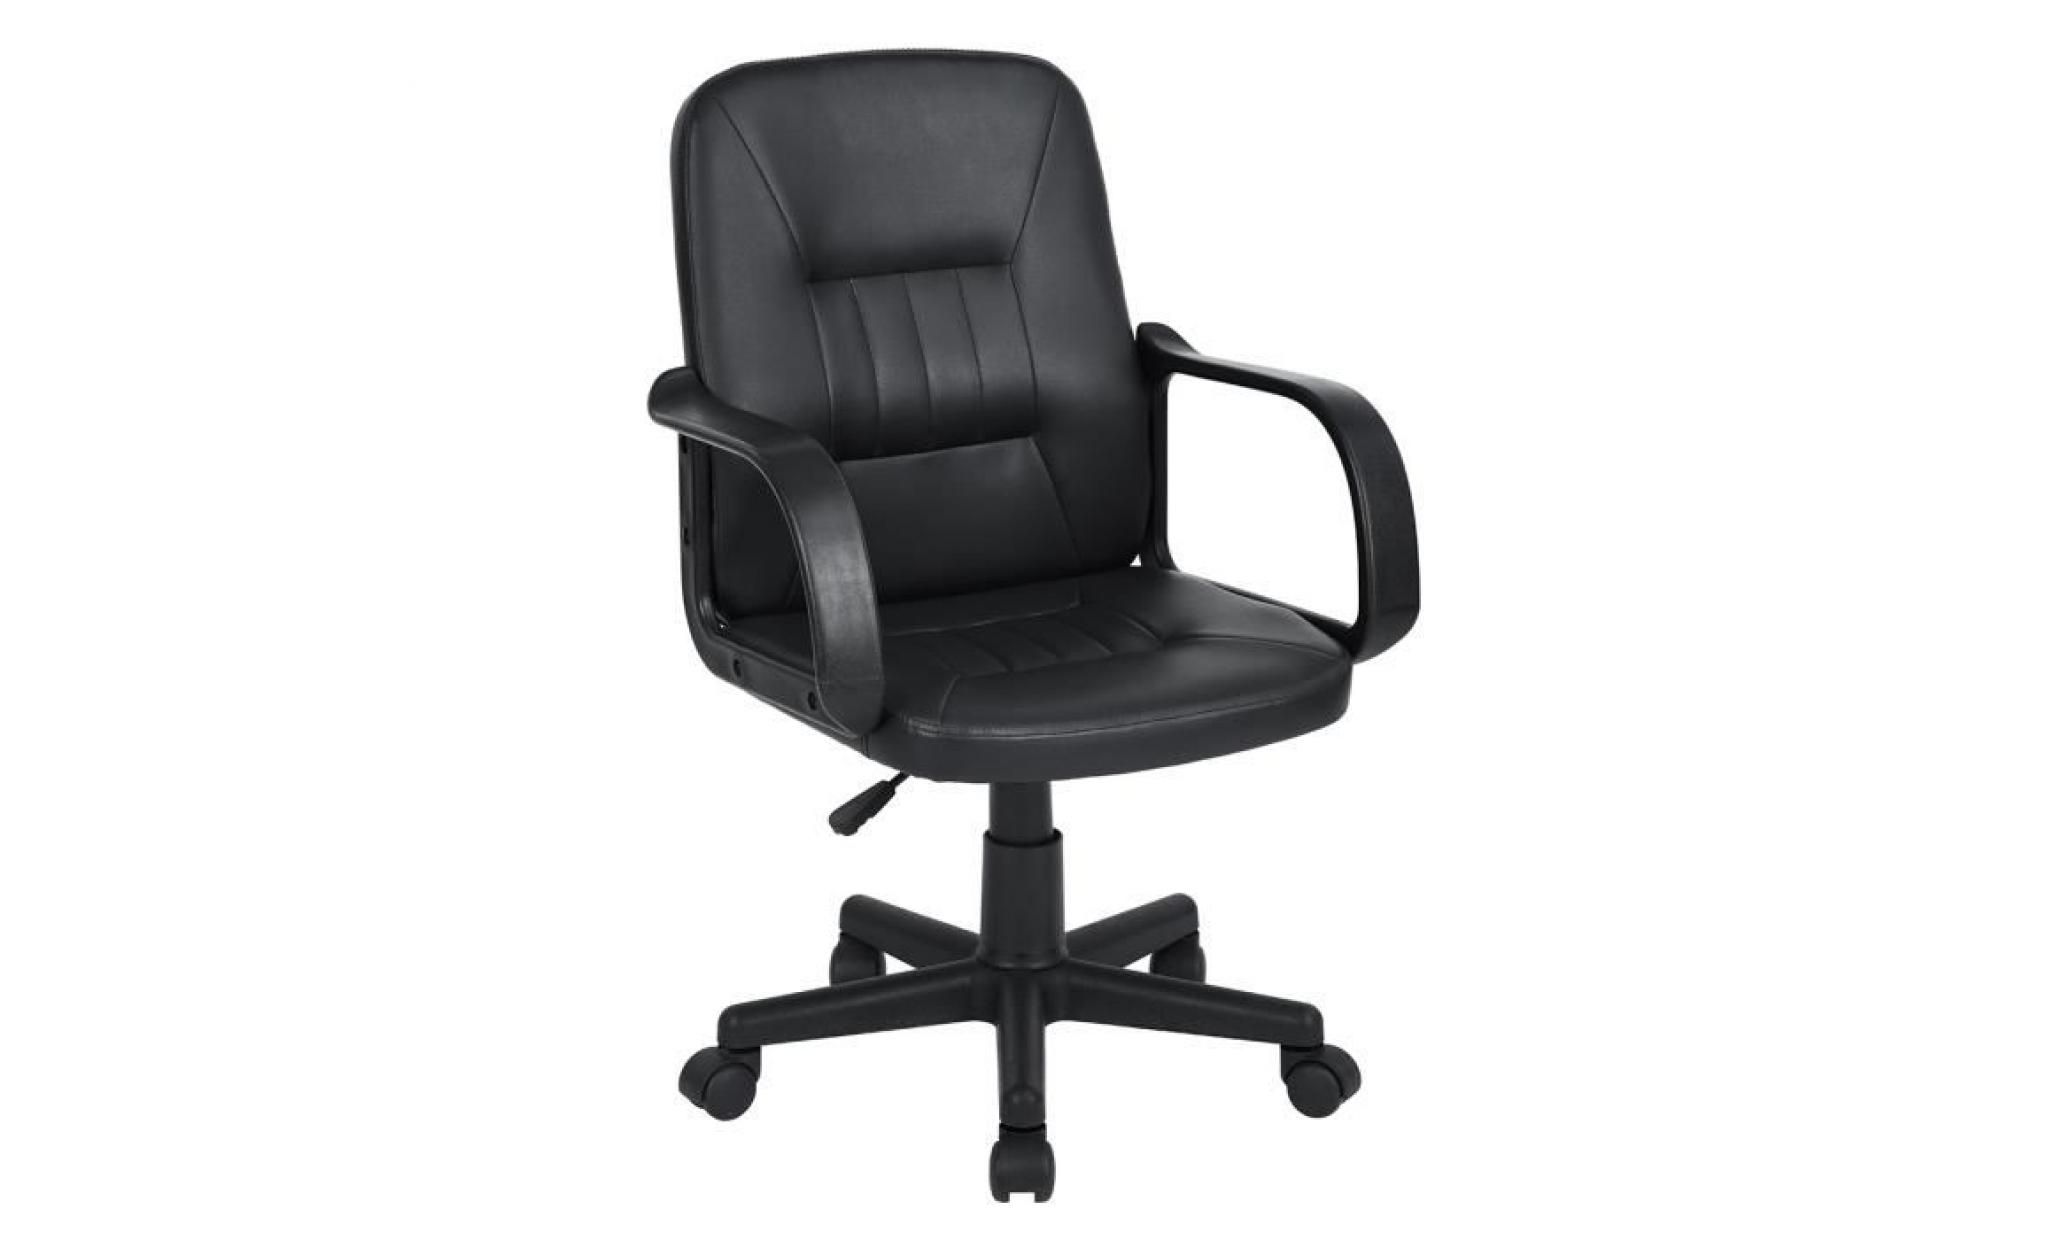 fauteuil de bureau noir avec dossier ergonomique en pvc  siège en Éponge accoudoir en pp,marque homy casa